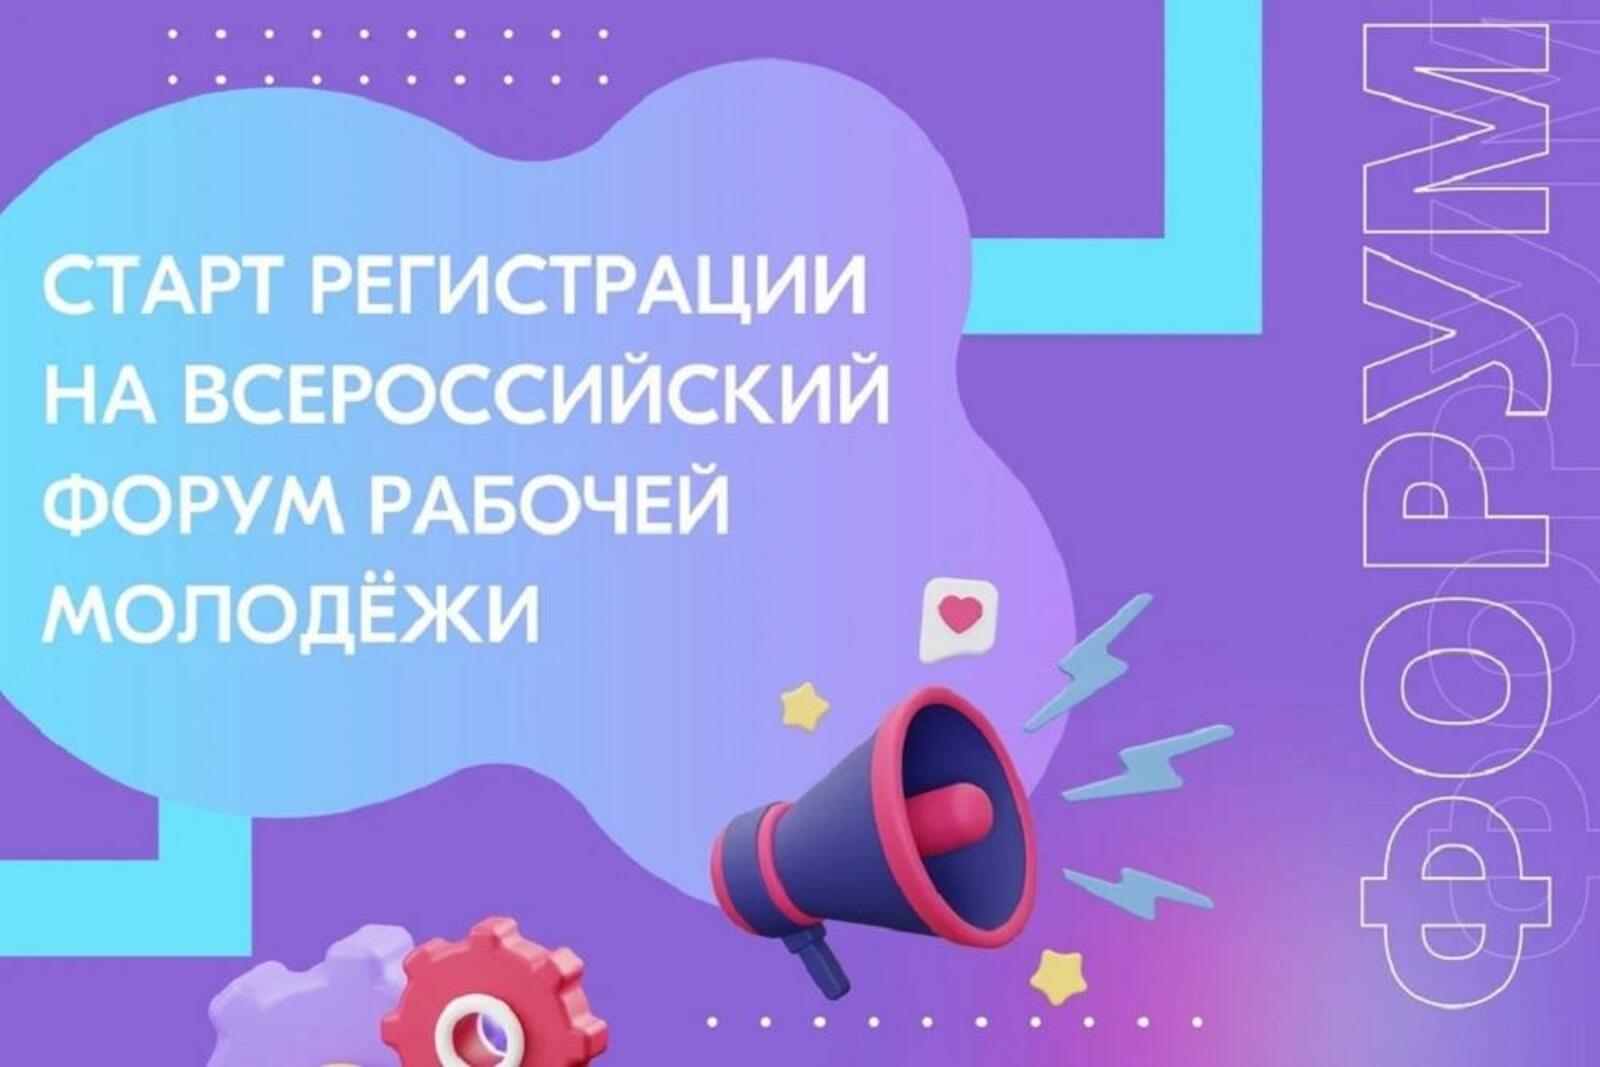 Молодые специалисты из Башкортостана смогут принять участие во Всероссийском форуме рабочей молодёжи